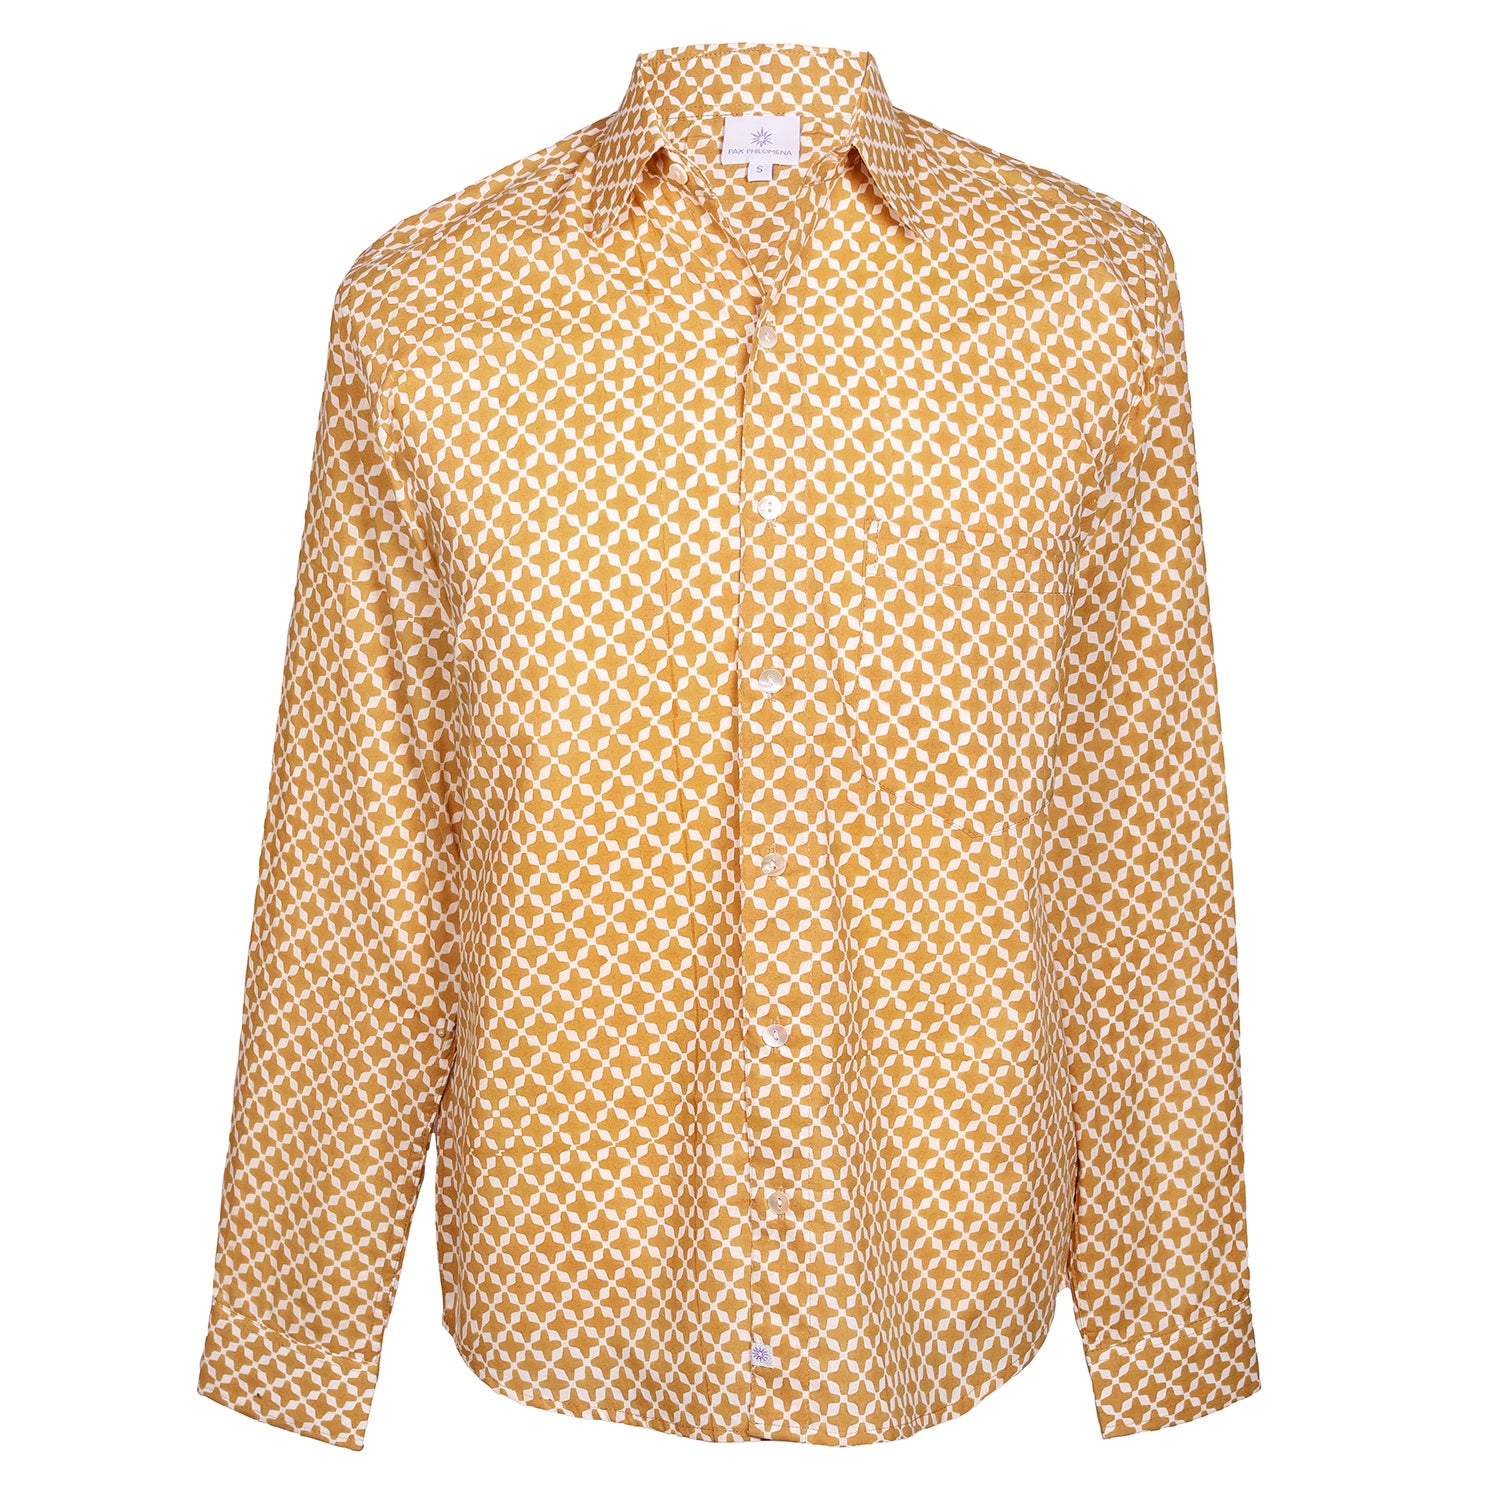 MyKonos Gold Long Sleeve Men's Button Up Shirt STORE CREDIT